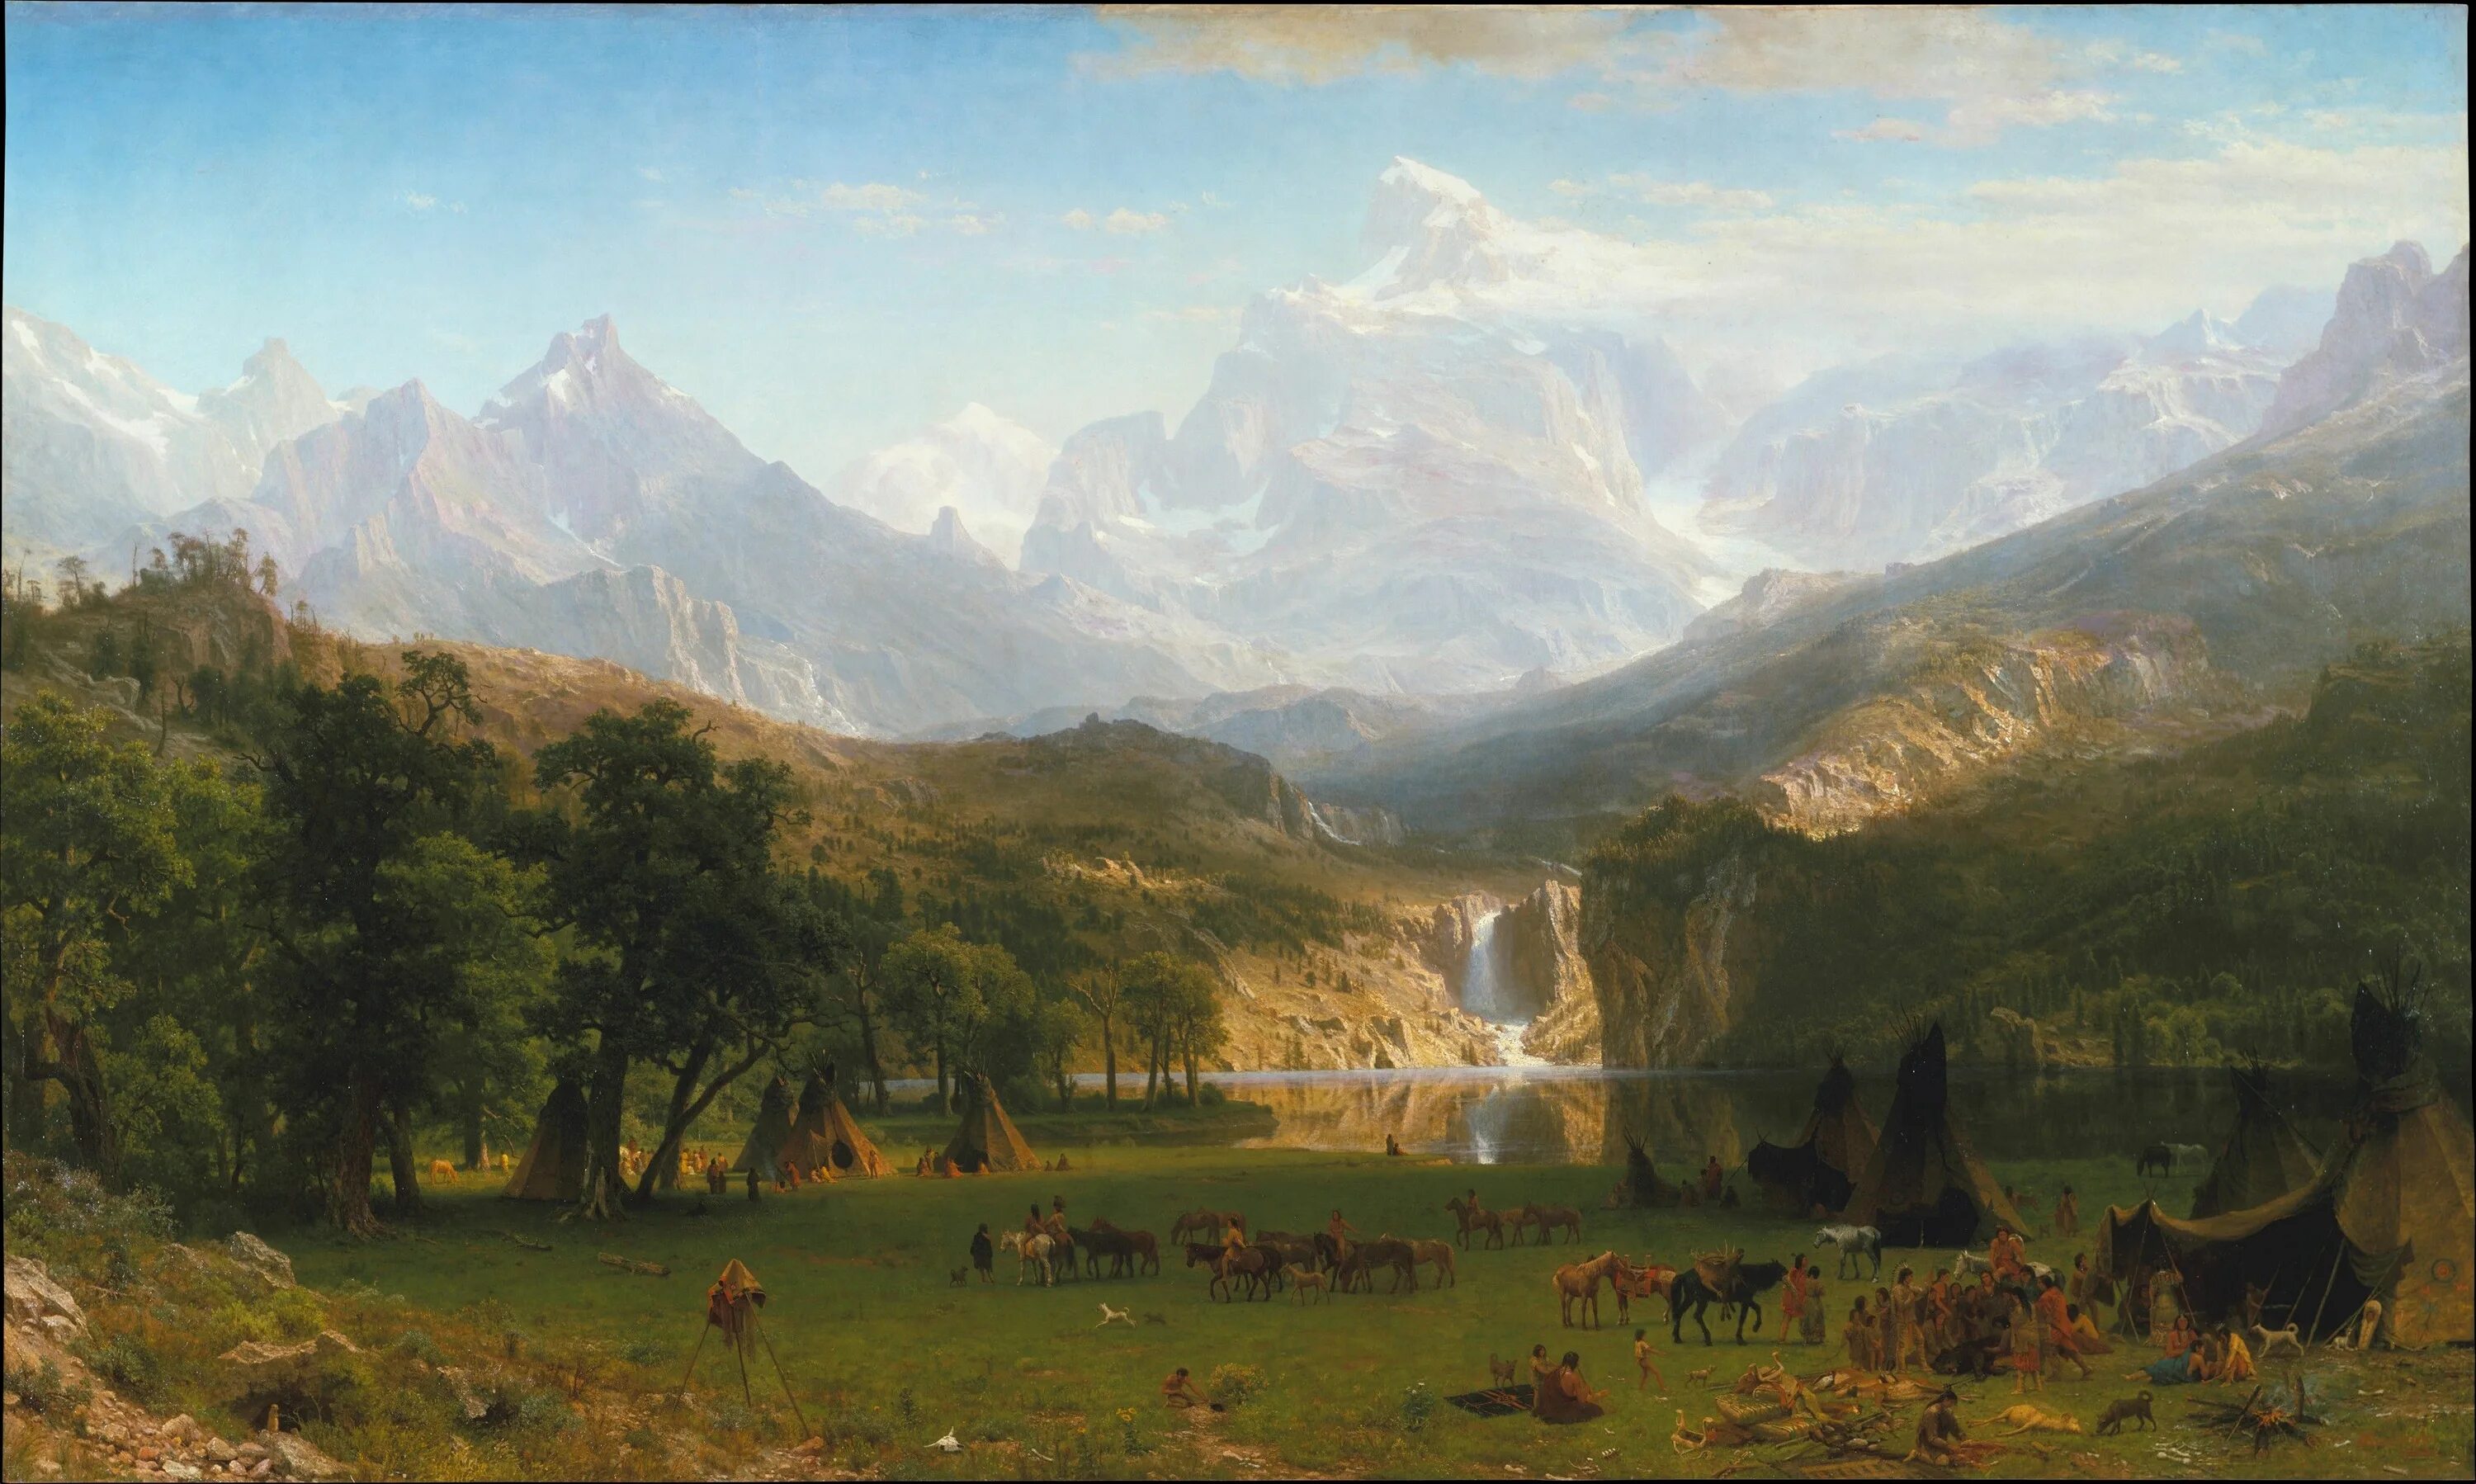 Мировая классика 19 века. « Скалистые горы» Альбер Бирштадт, 1863.